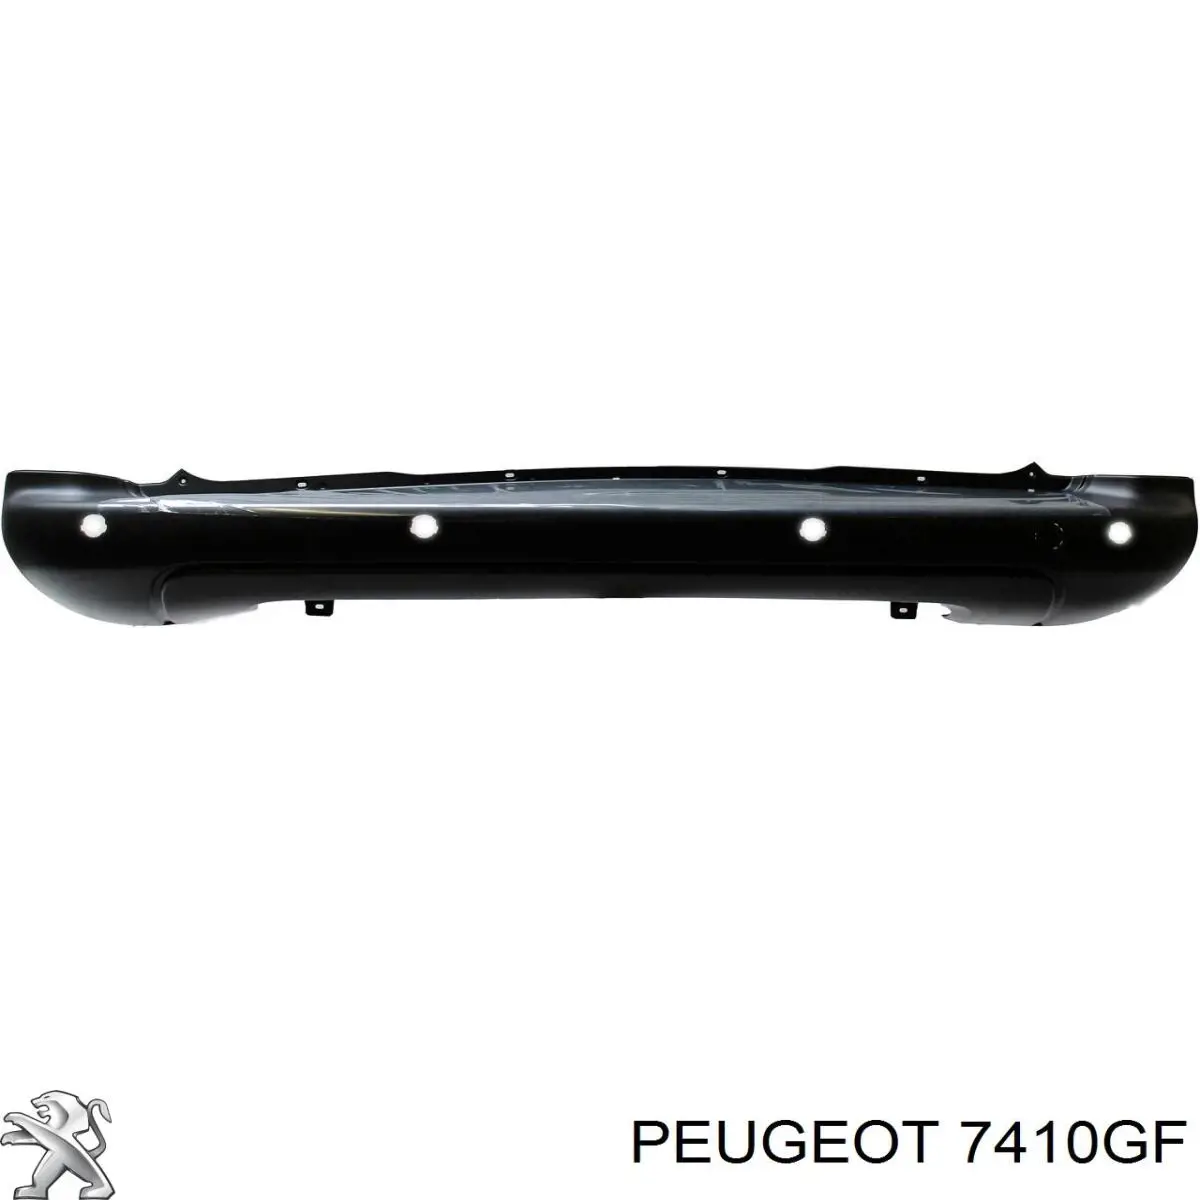 7410GF Peugeot/Citroen parachoques trasero, parte central